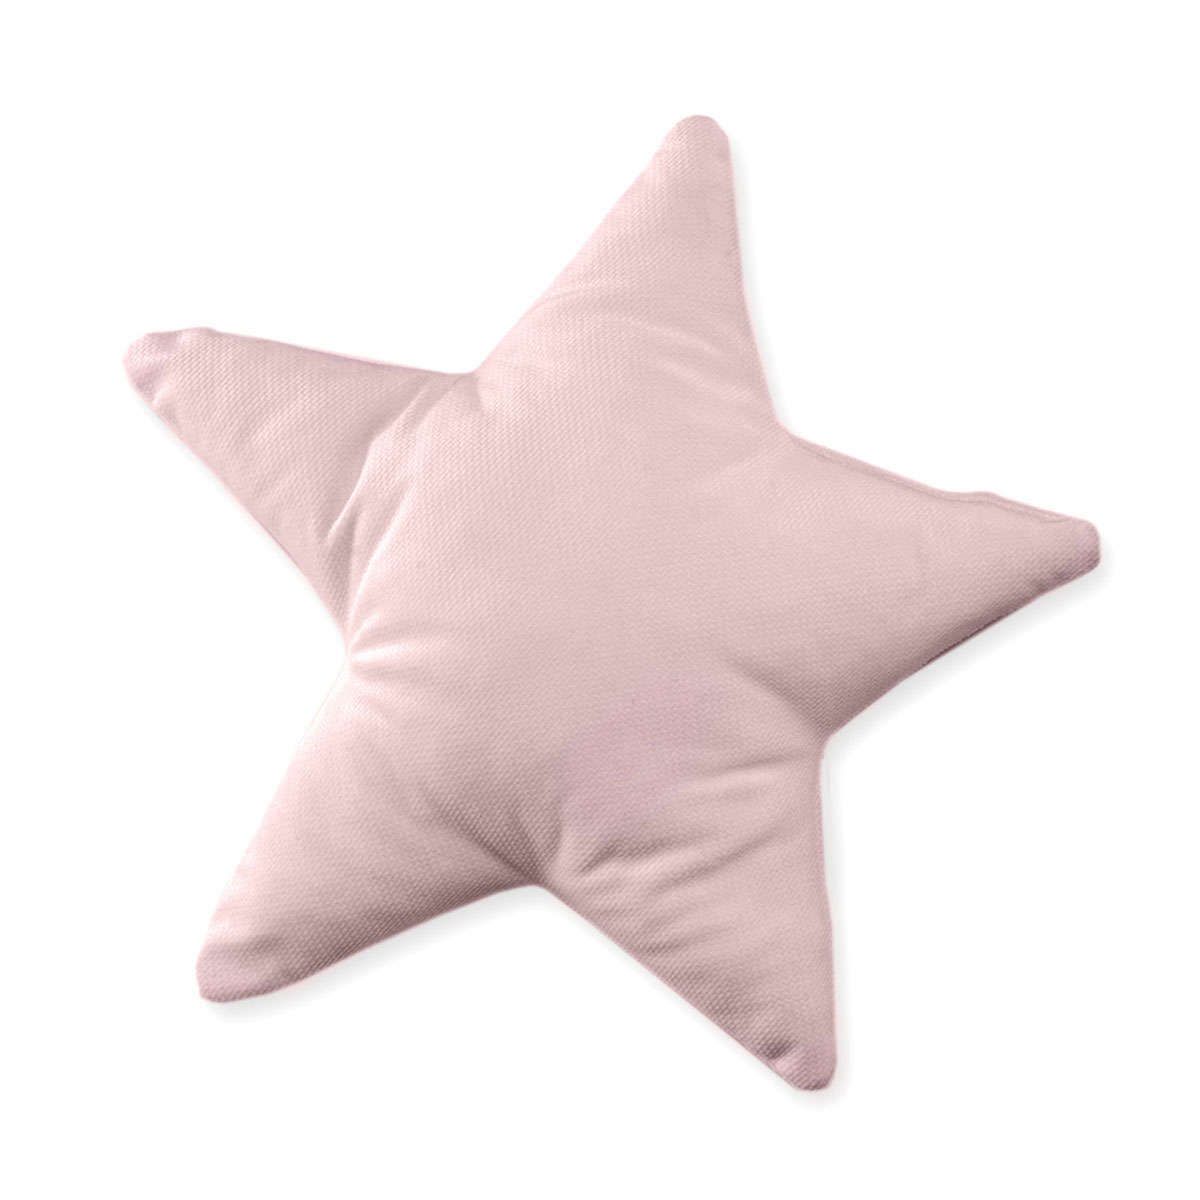 Διακοσμητικό μαξιλάρι βελουτέ Αστέρι des.121 pink baby oliver